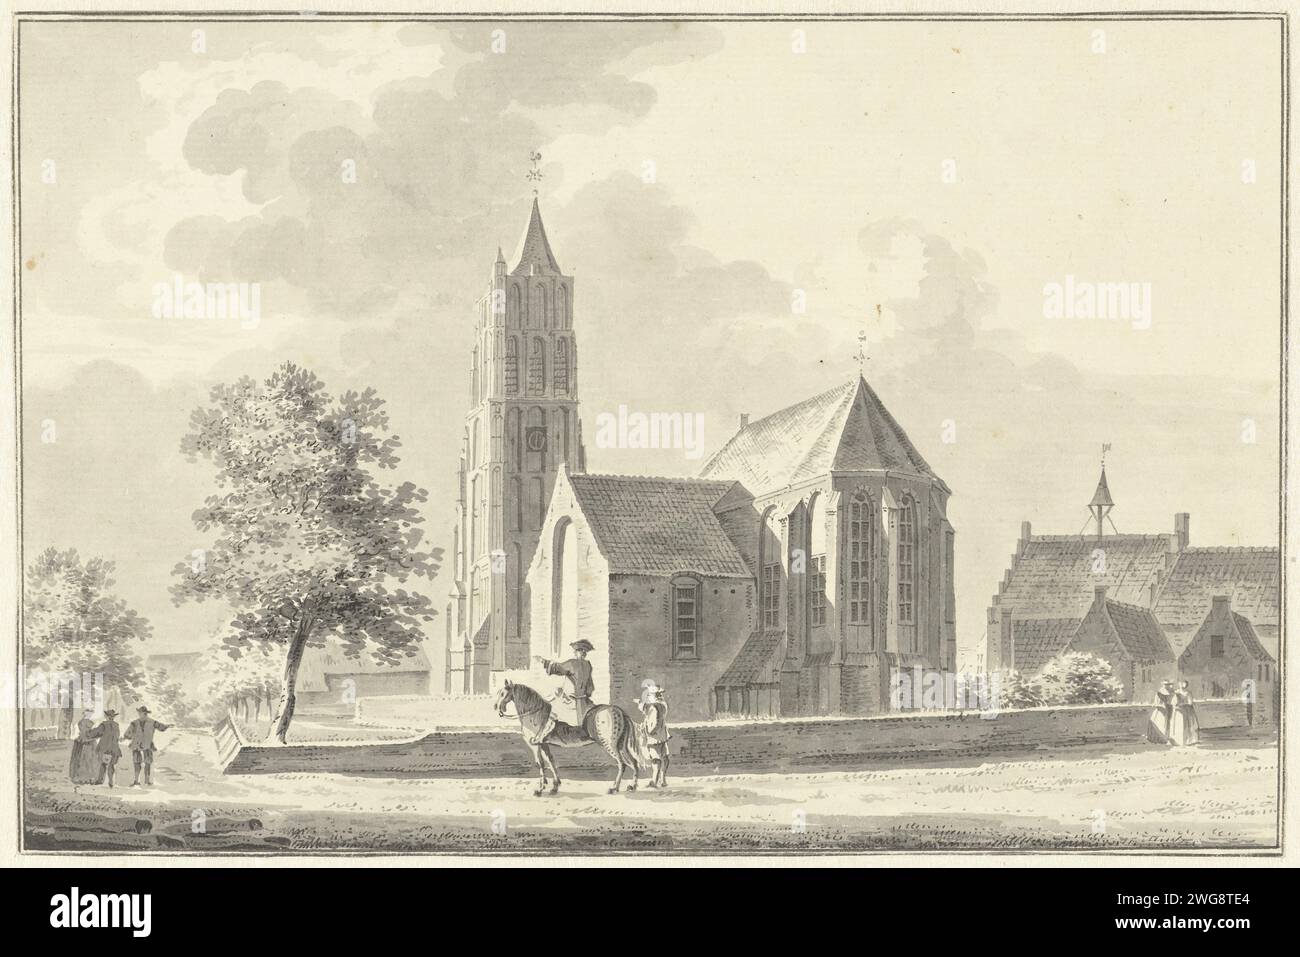 Kirche und Rathaus in Heukelom, Pieter Jan van Liender, 1756 Zeichenpapier. Tintenstift / Pinsel Kirche (außen). stadthaus Heukelum Stockfoto